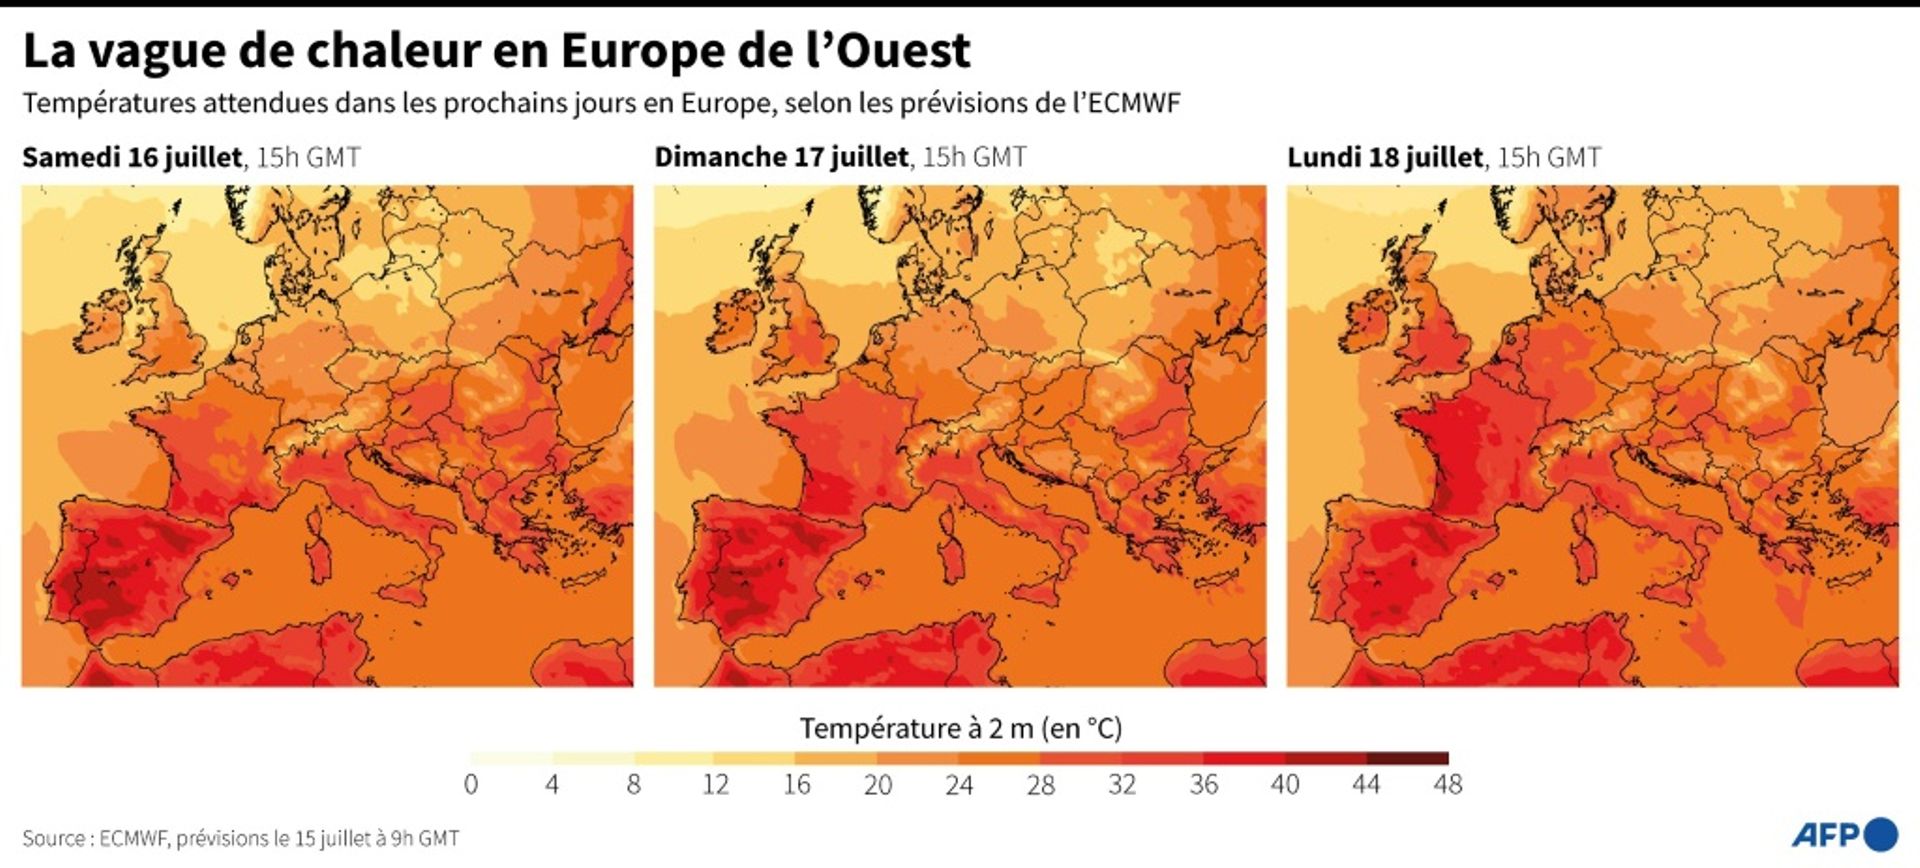 La vague de chaleur en Europe de l'Ouest